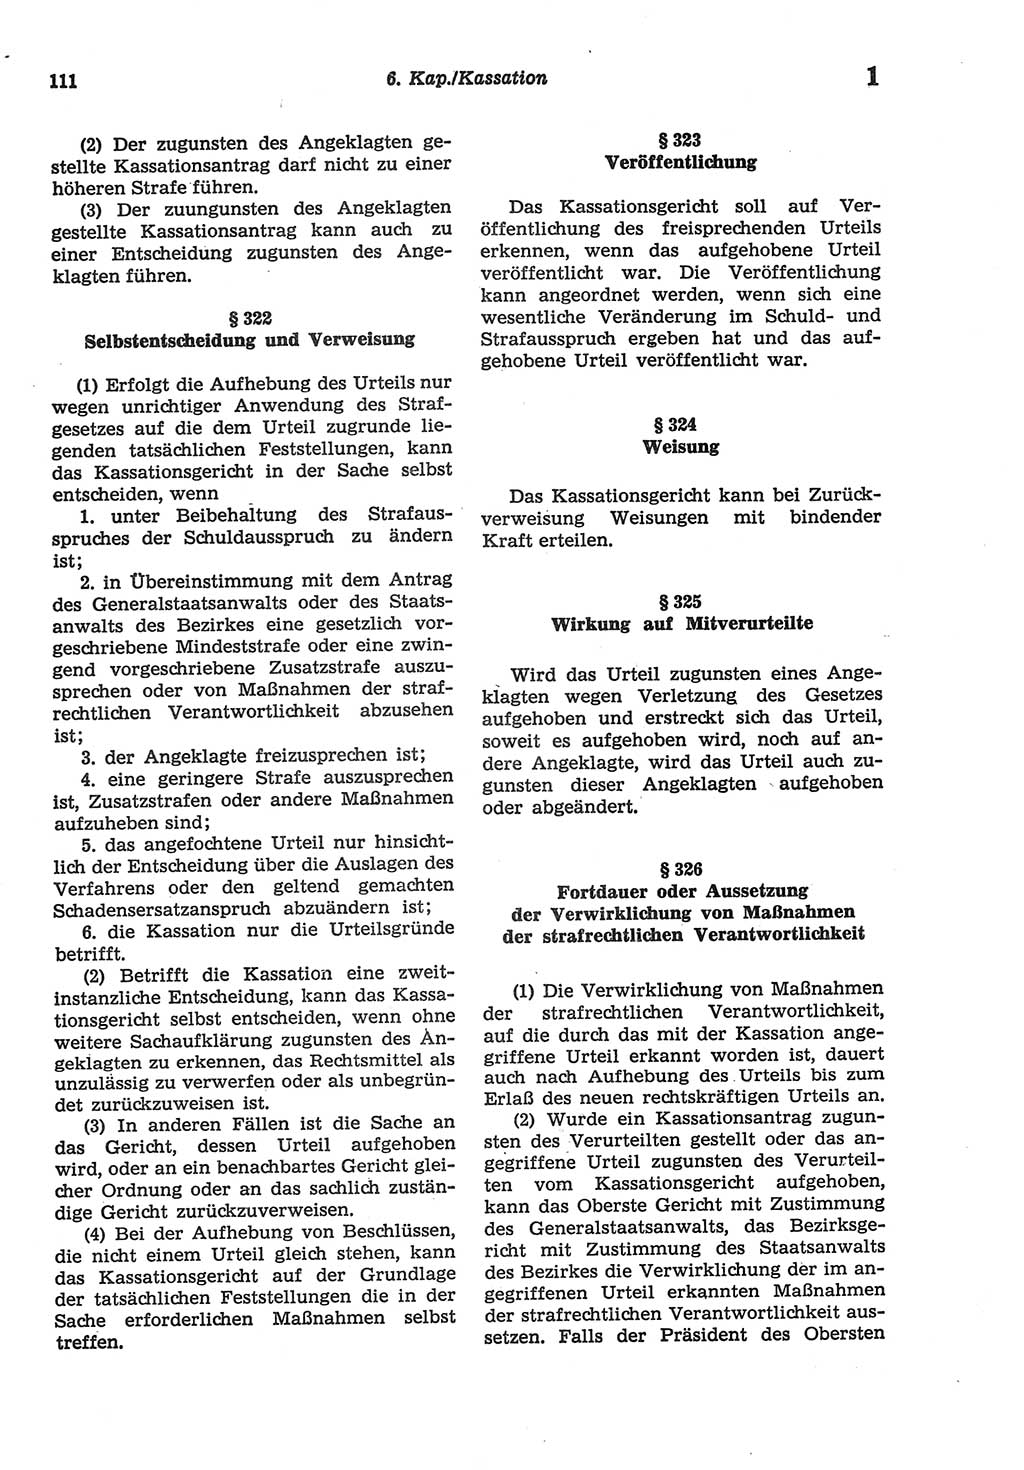 Strafprozeßordnung (StPO) der Deutschen Demokratischen Republik (DDR) sowie angrenzende Gesetze und Bestimmungen 1977, Seite 111 (StPO DDR Ges. Best. 1977, S. 111)